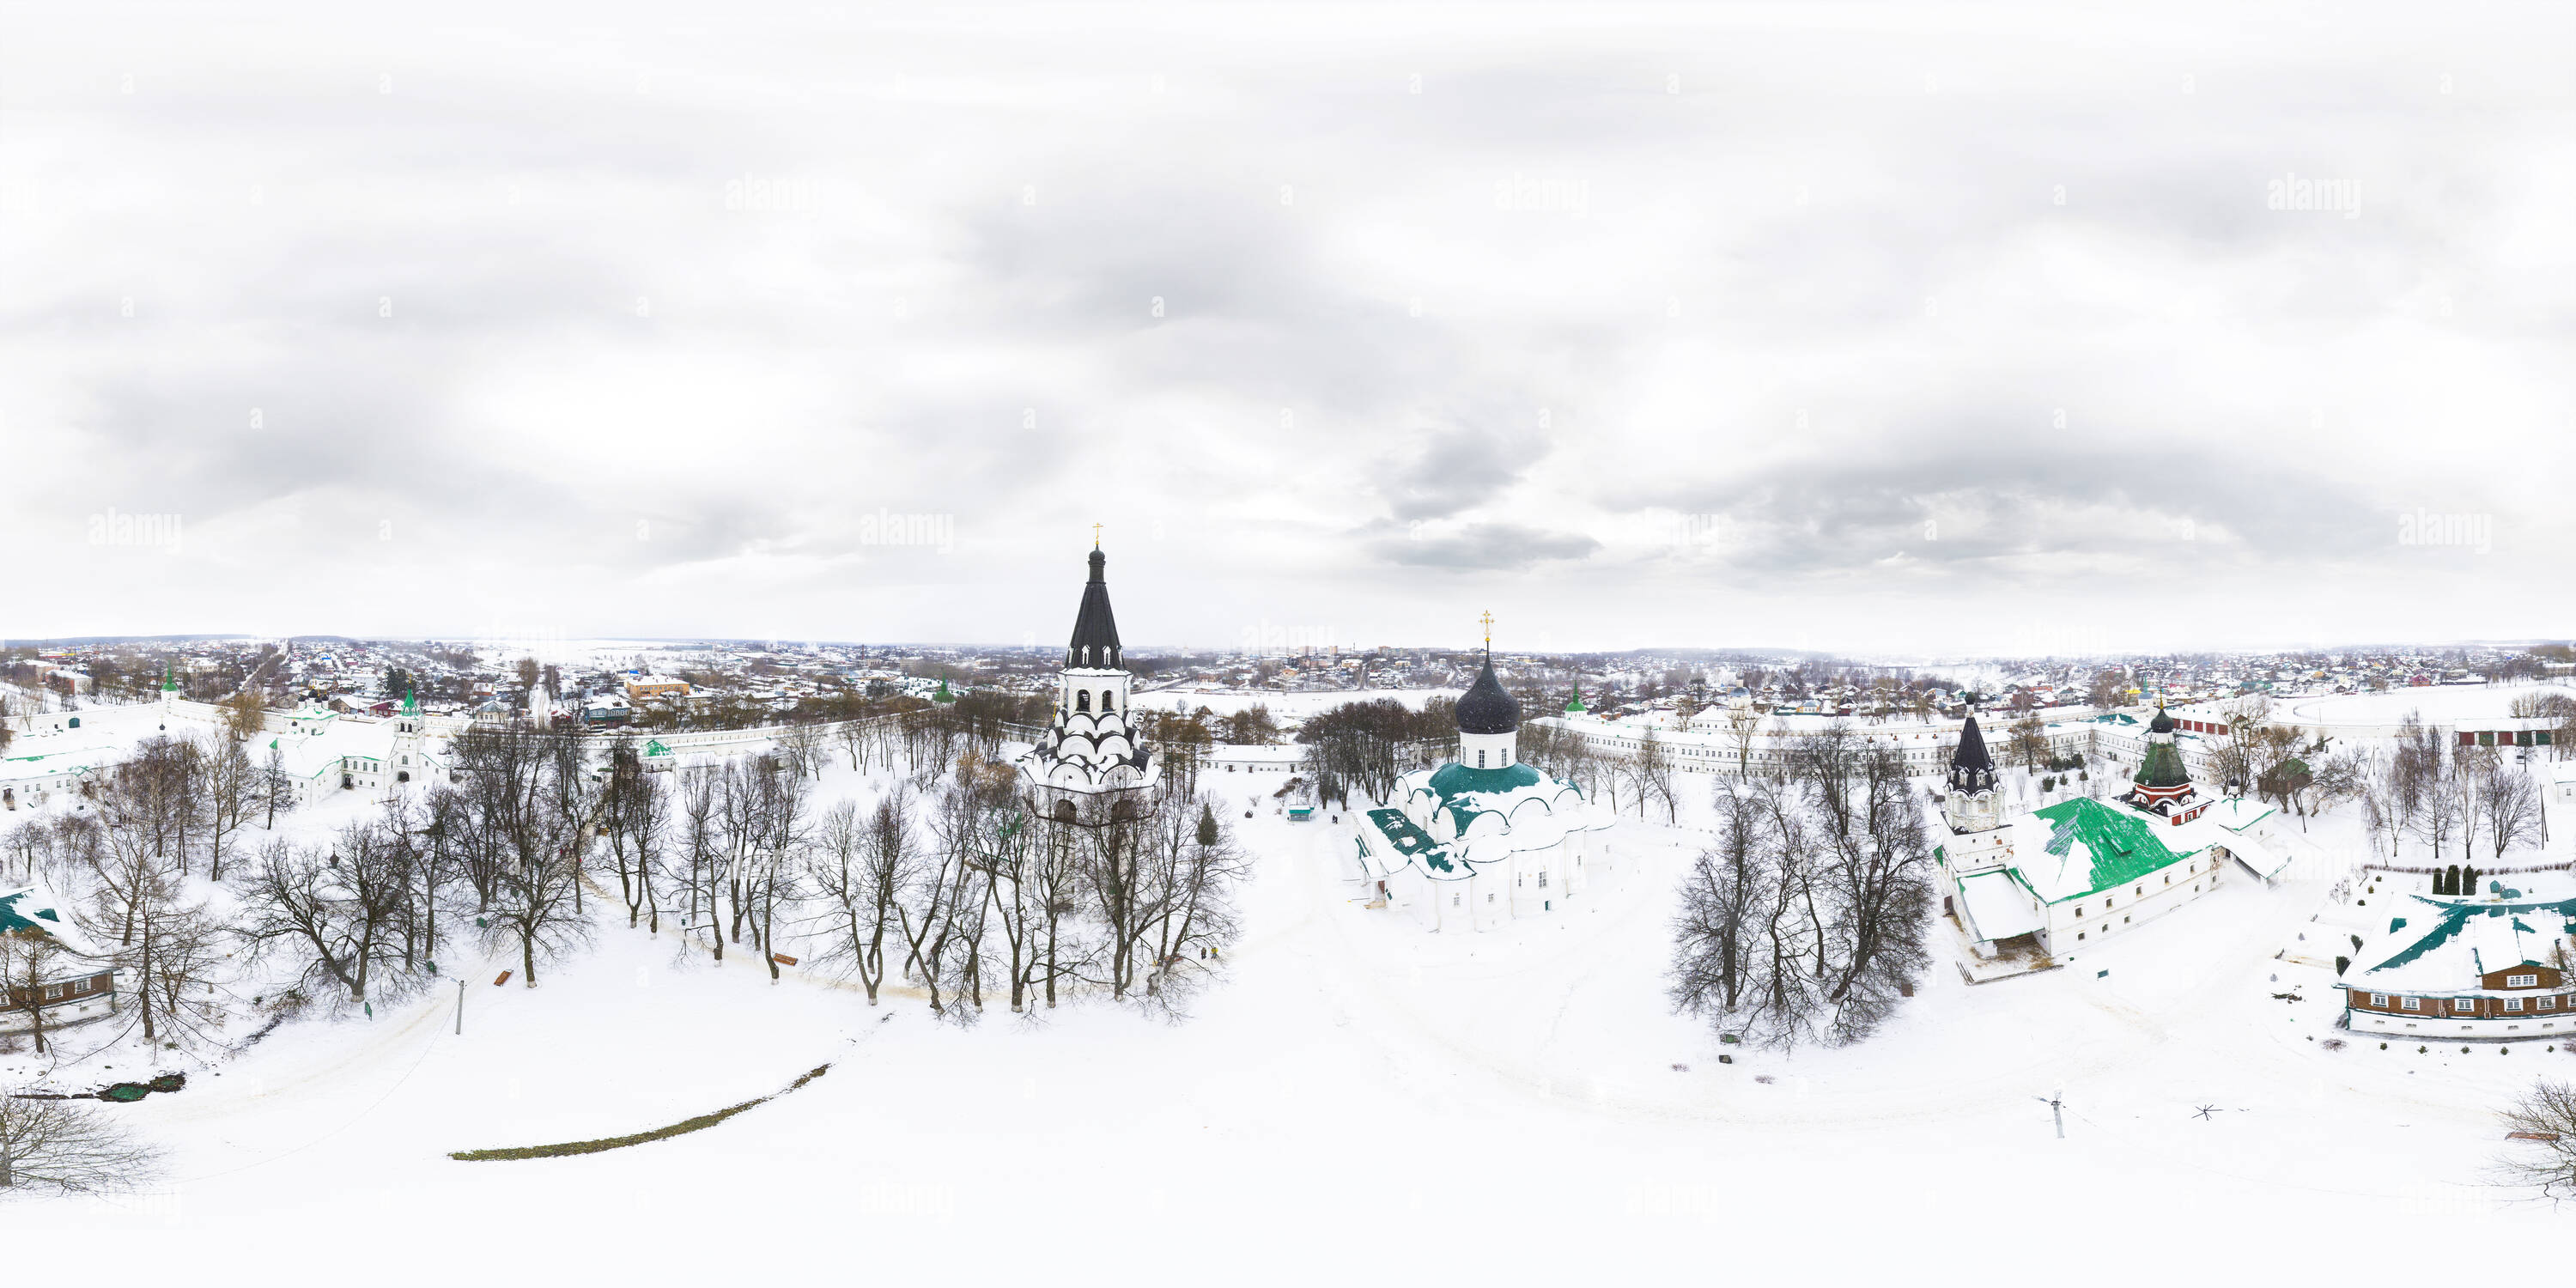 Visualizzazione panoramica a 360 gradi di Cremlino Alexandrov Inverno 1